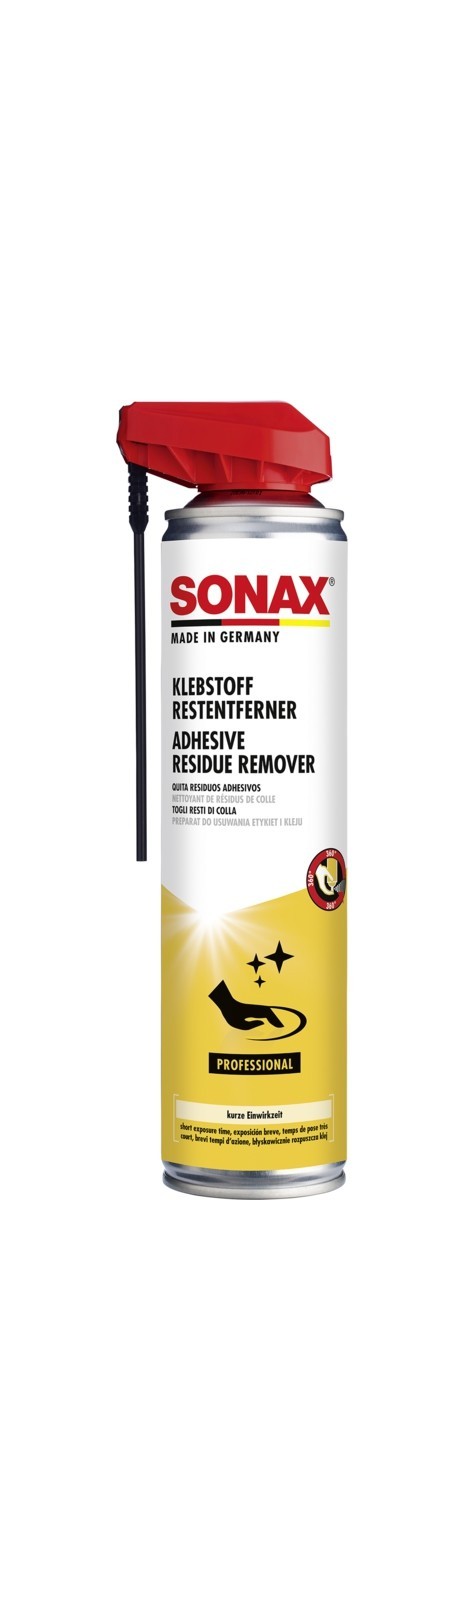 SONAX Klebstoff-Restentferner mit Easyspray (400 ml), Art.-Nr. 04773000